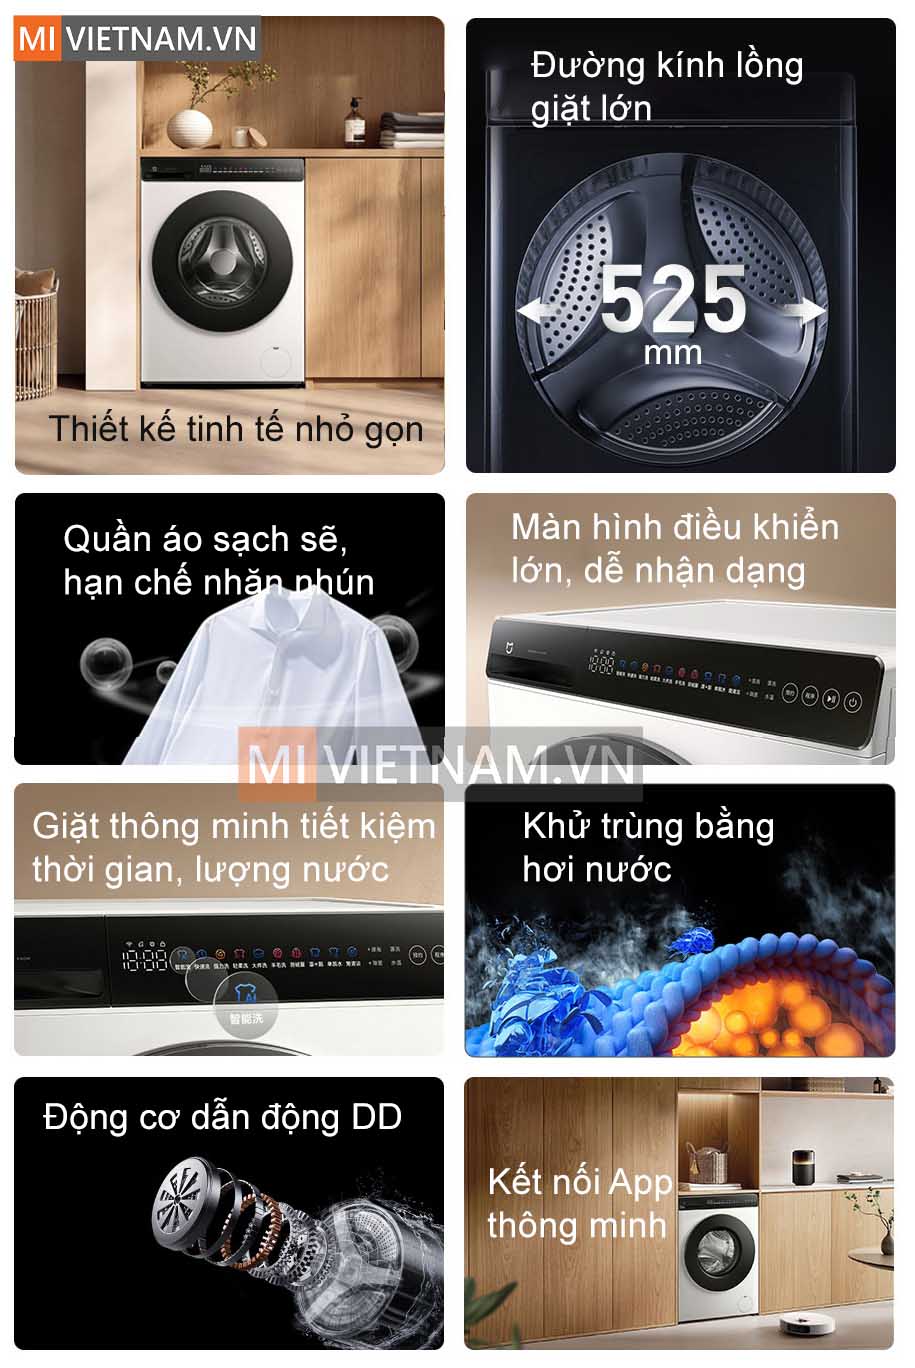 Ưu điểm nổi bật của máy giặt Xiaomi Mijia MJ106